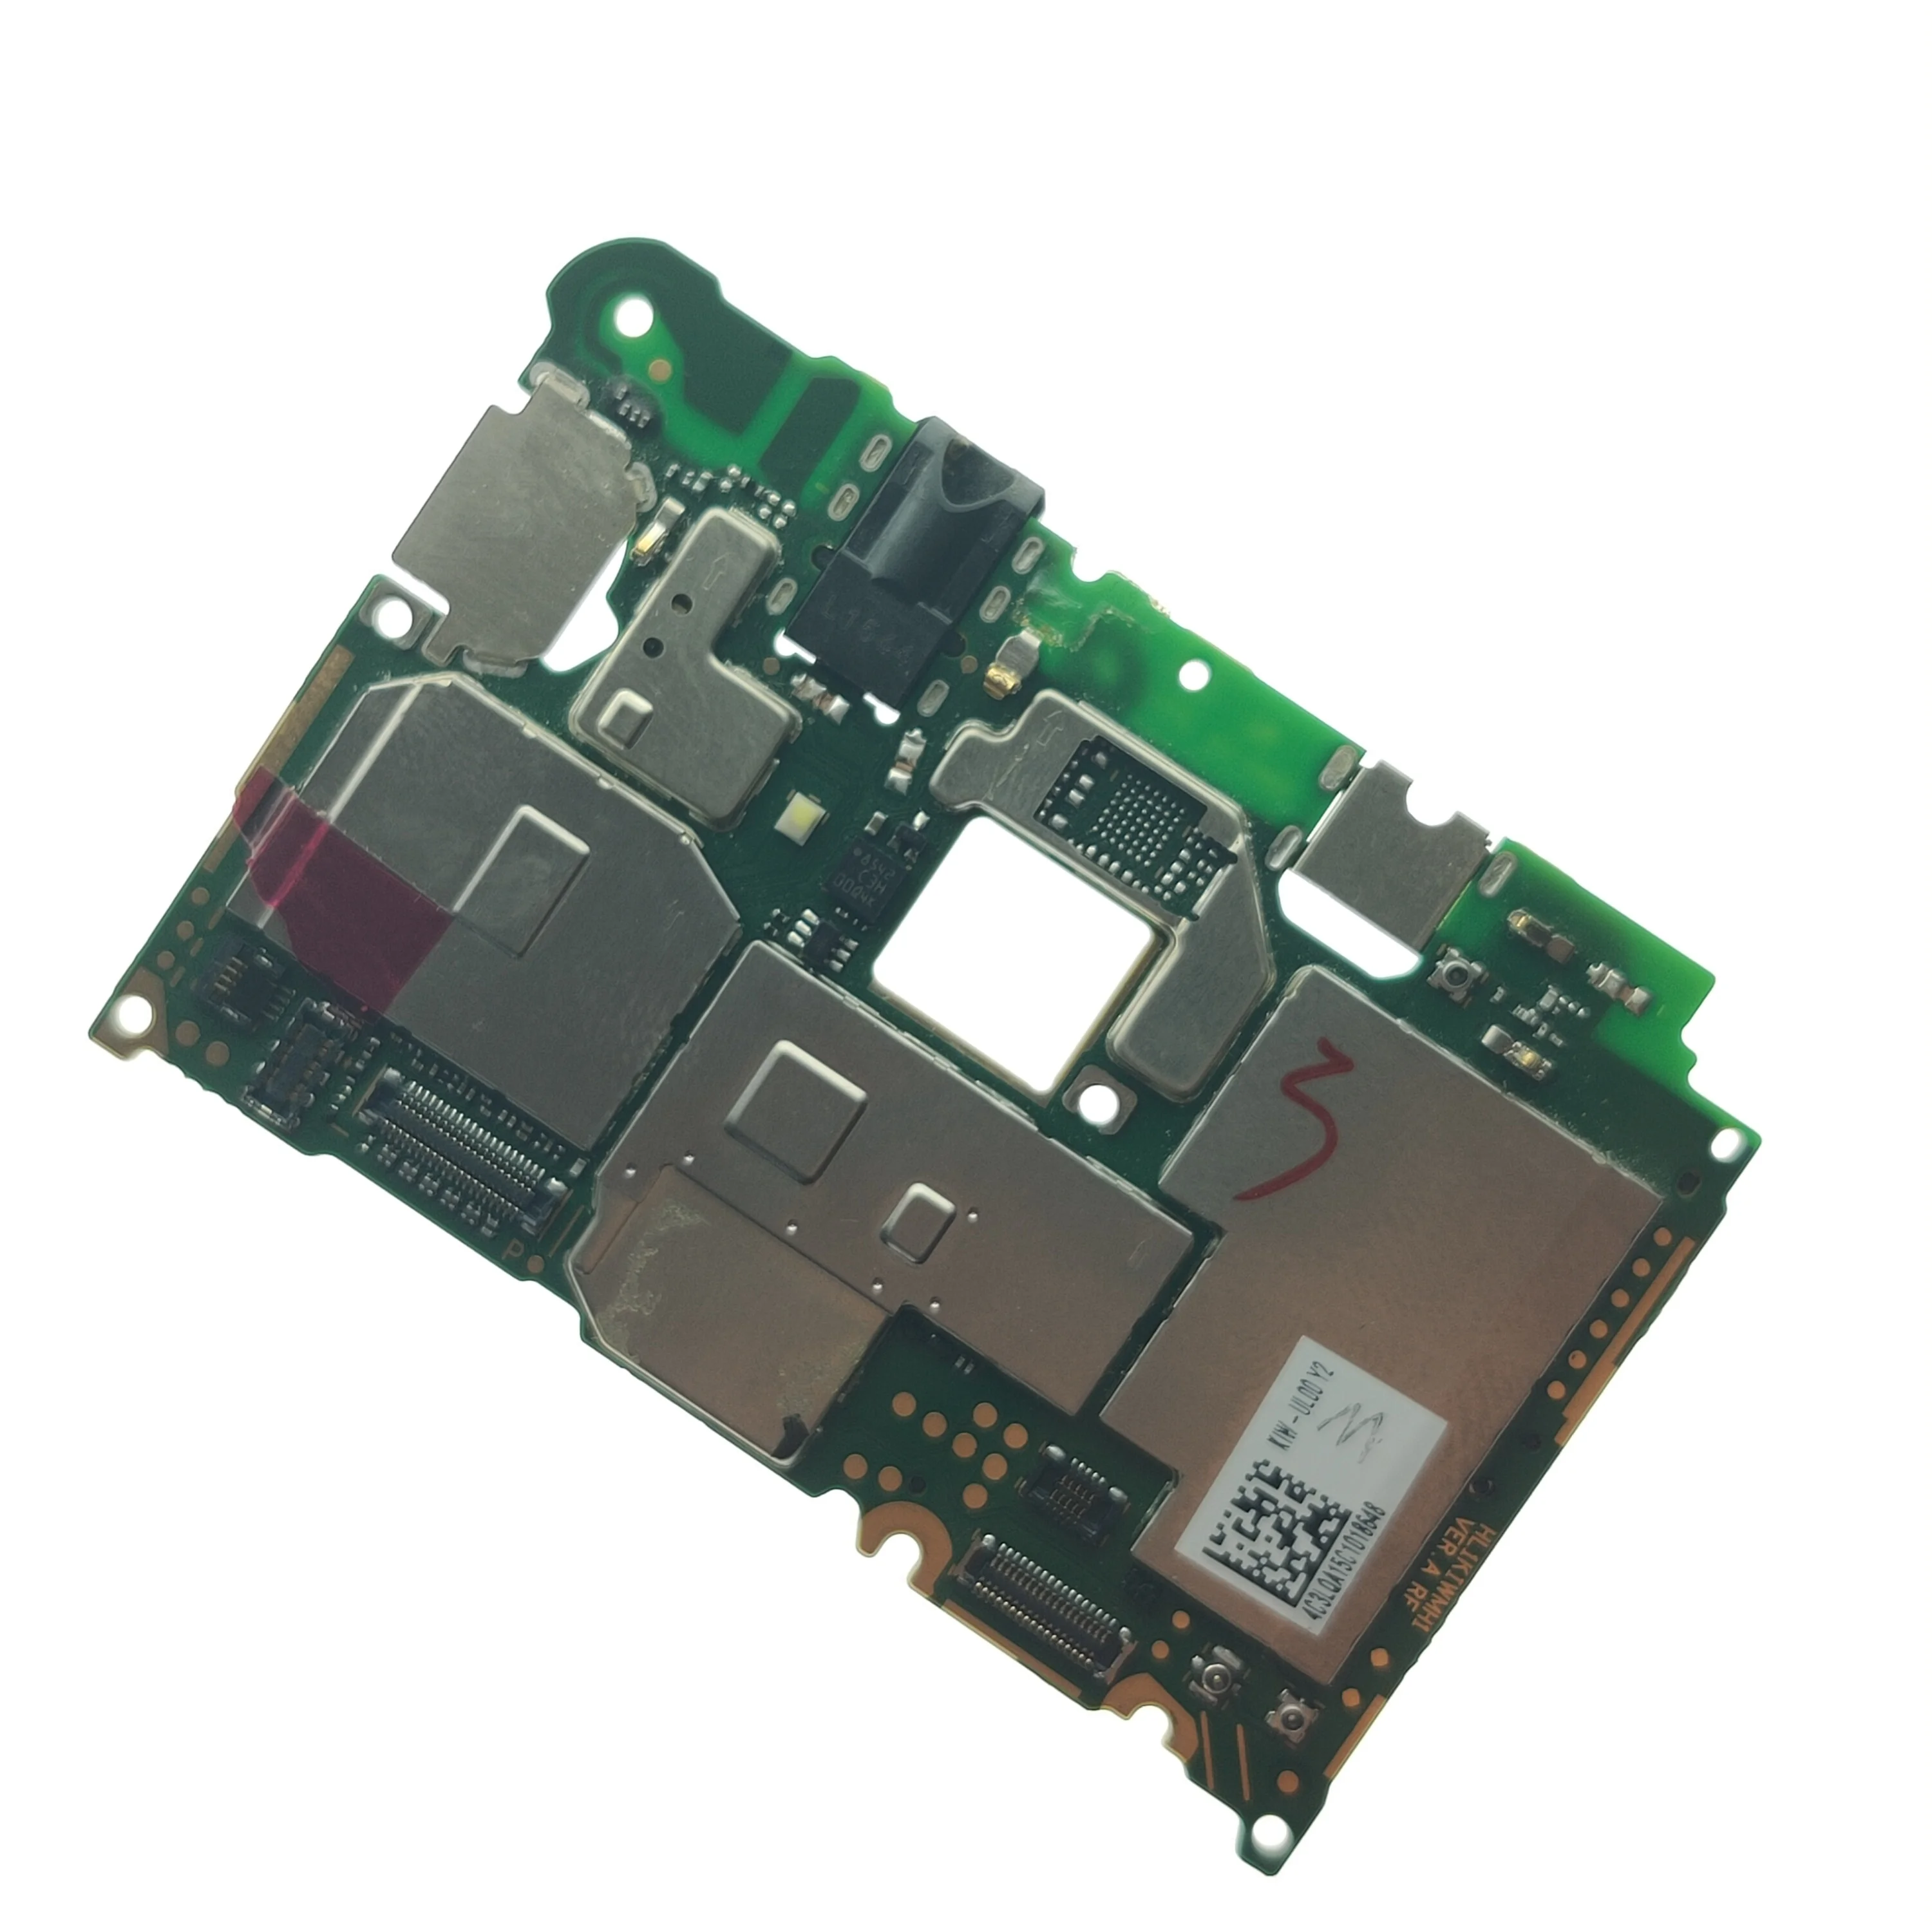 

Original Main board Motherboard Repalcement Repair Parts For Huawei GR5/ Honor 5X KIW-L21 KIW-AL10 KIW-UL00